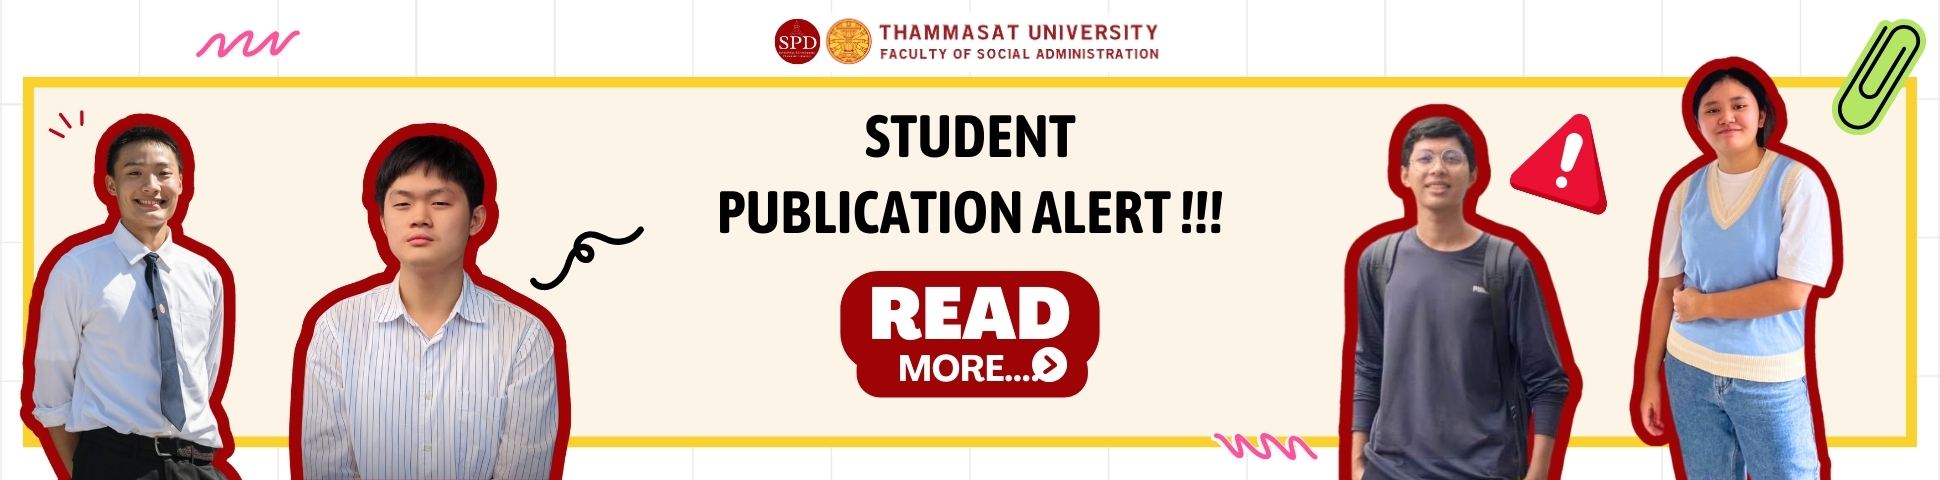 students publication alert (1940 x 480 px)